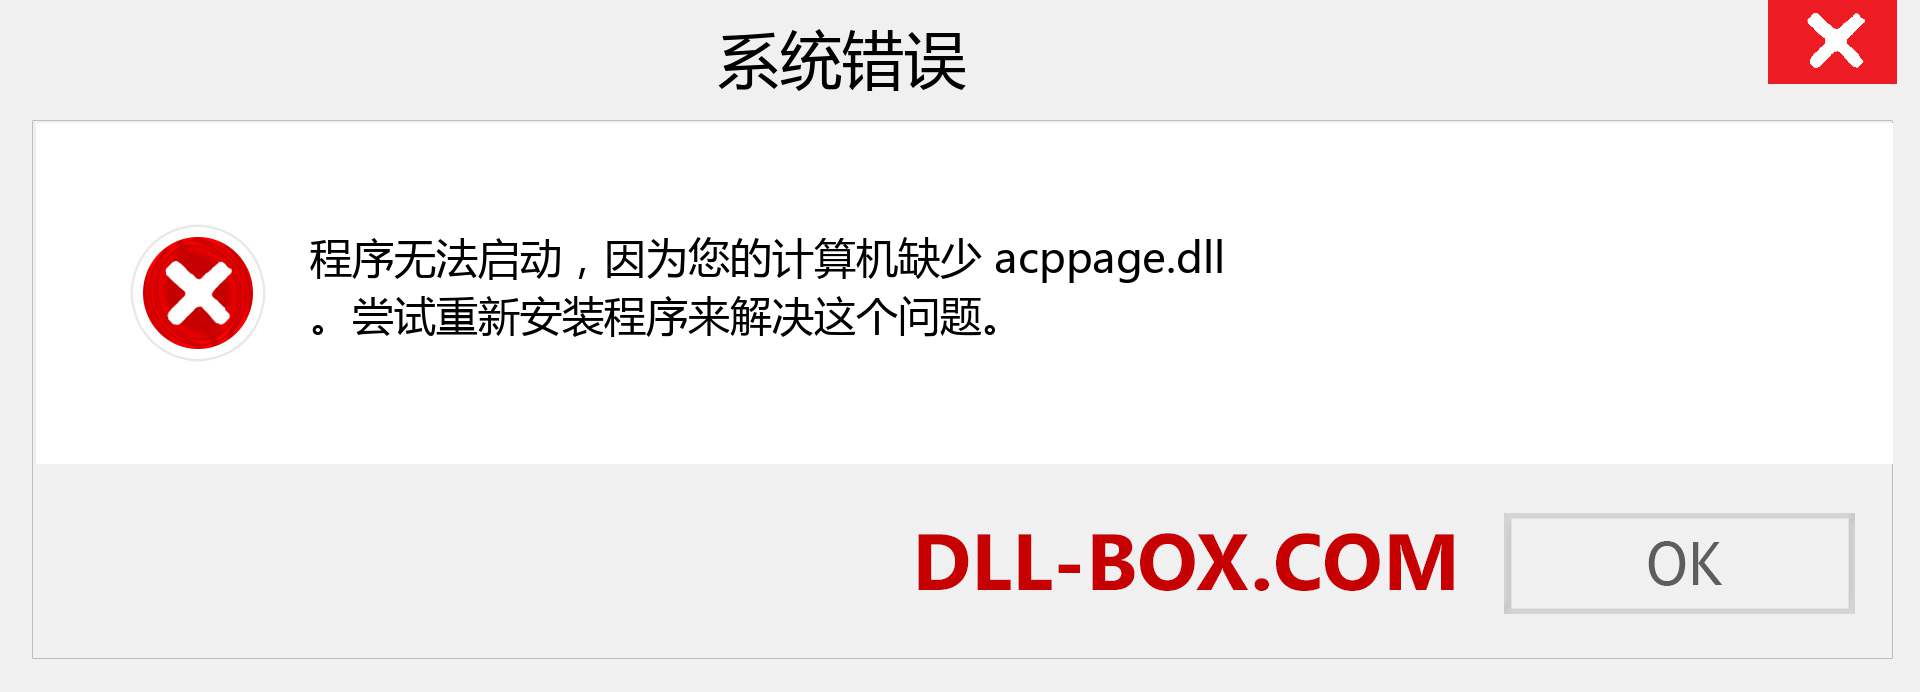 acppage.dll 文件丢失？。 适用于 Windows 7、8、10 的下载 - 修复 Windows、照片、图像上的 acppage dll 丢失错误